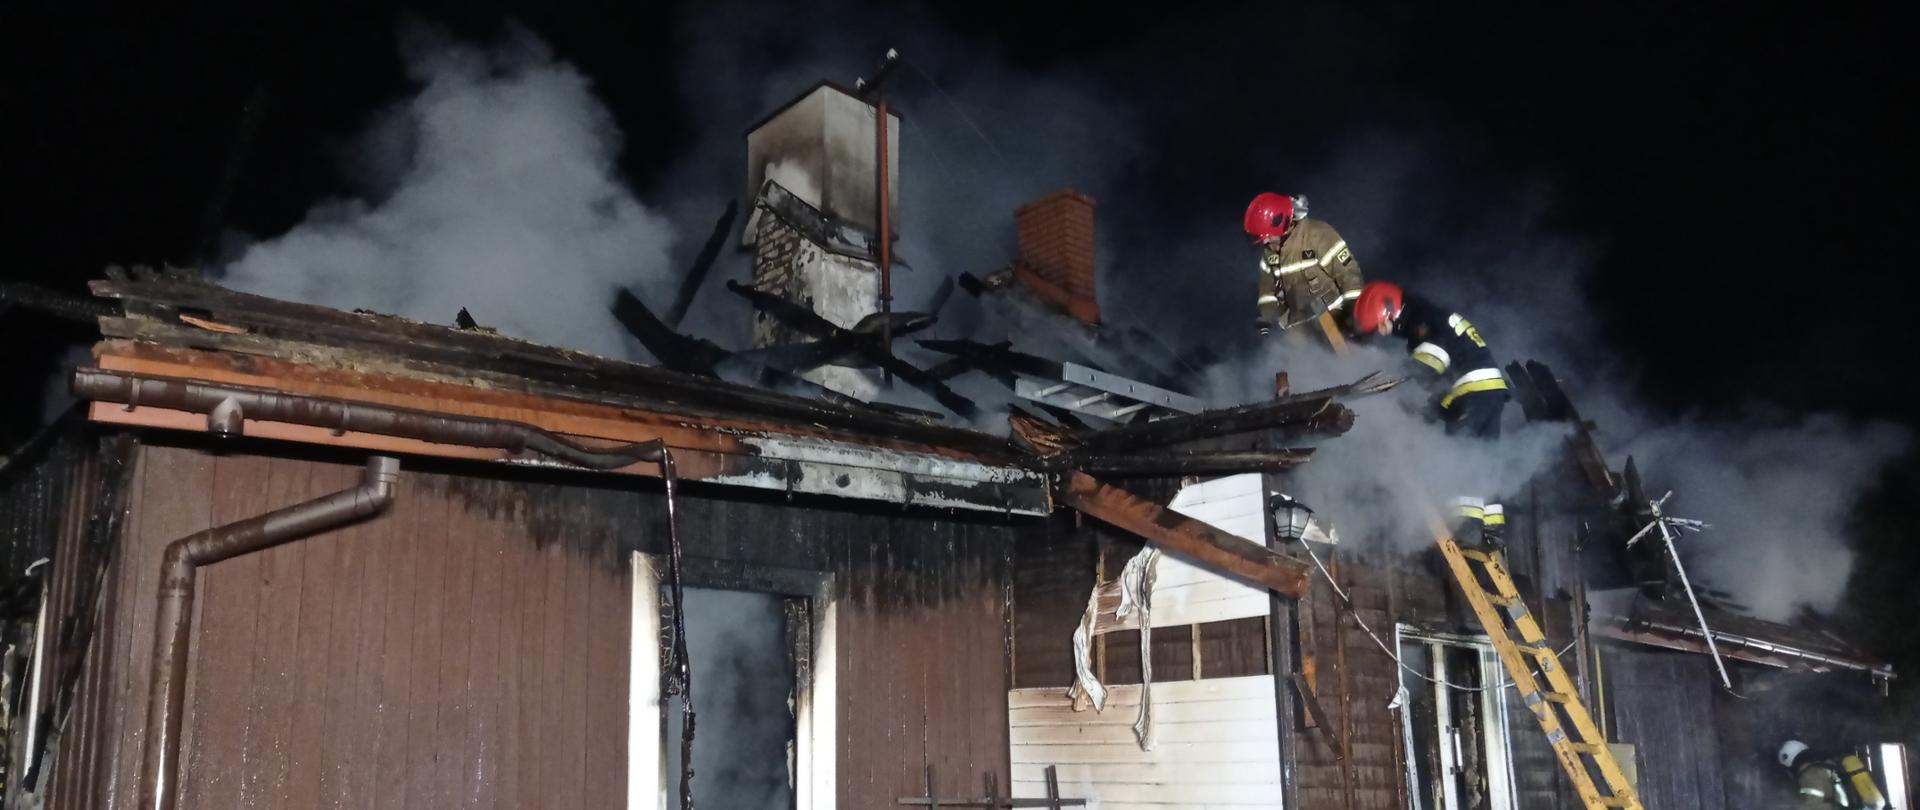 Na zdjęciu widać spalony budynek i strażaków pracujących na pogorzelisku